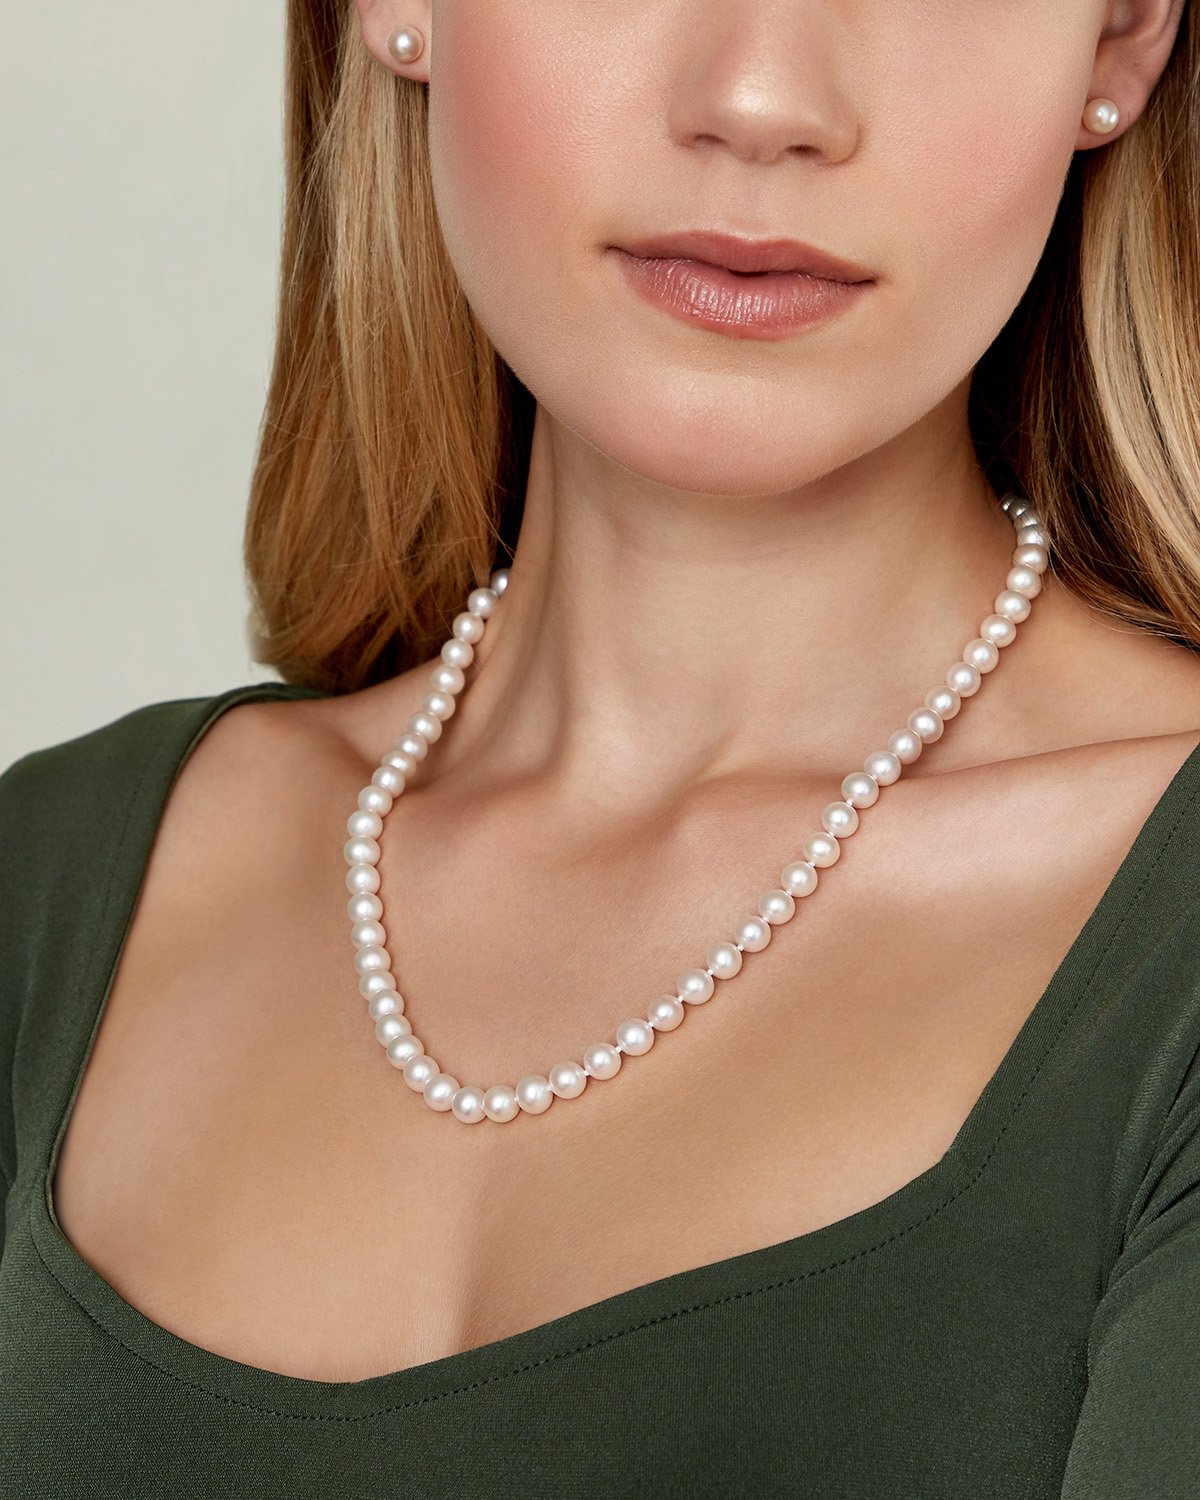 Asap rocky pearl necklace freshwater pearls – Bijouterie Gonin